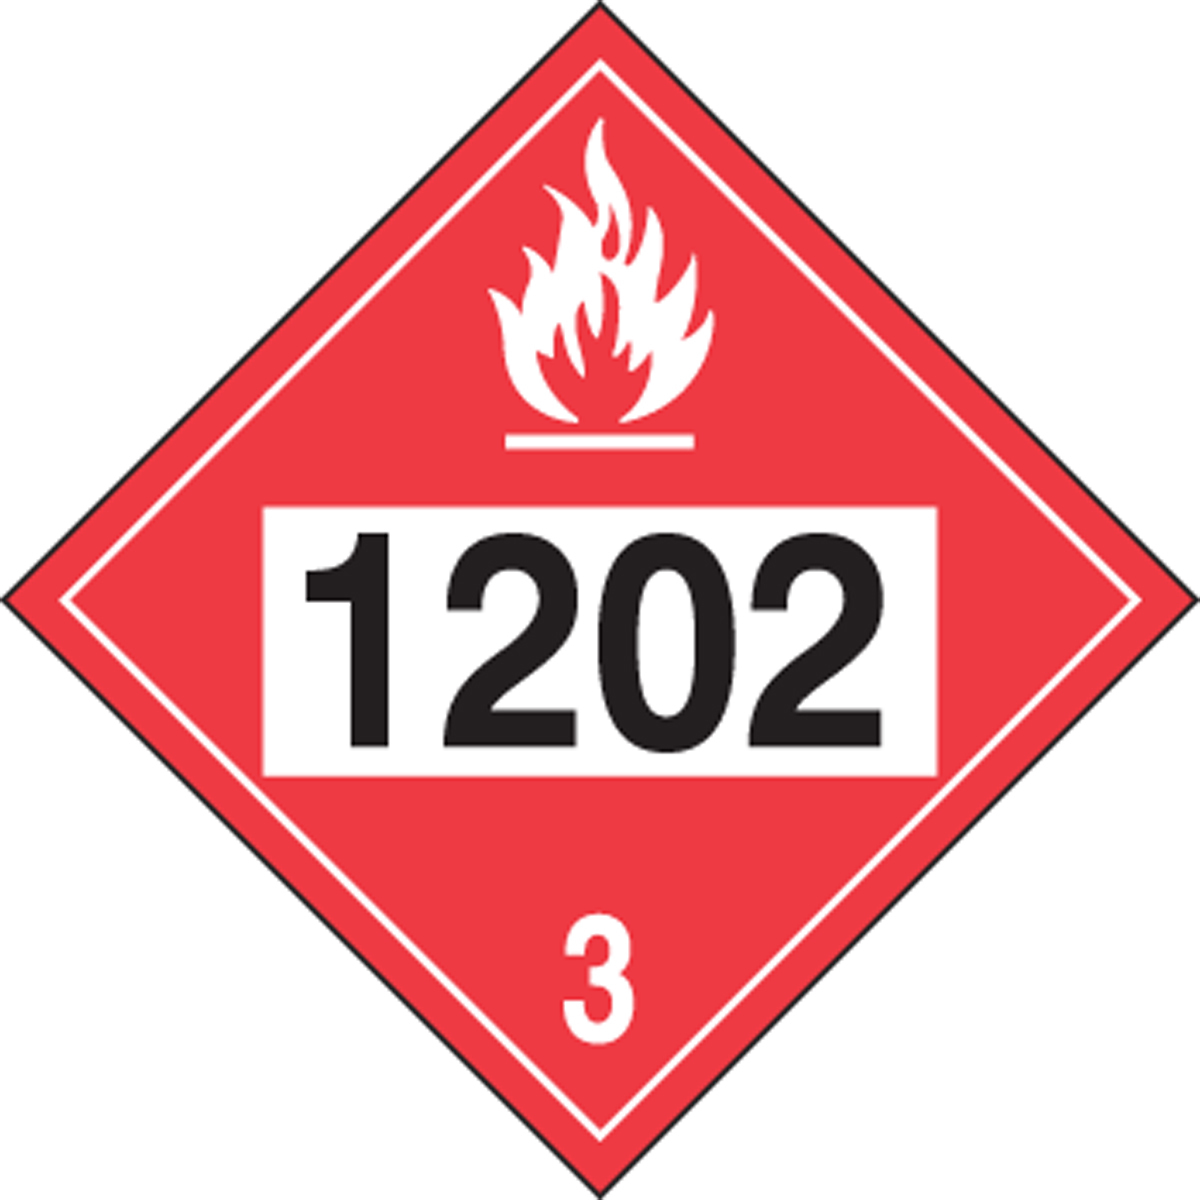 Опасность 3.3. 3 Класс опасности. Наклейки горючие. Класс опасности бензин 1203. Класс топлива 1202.